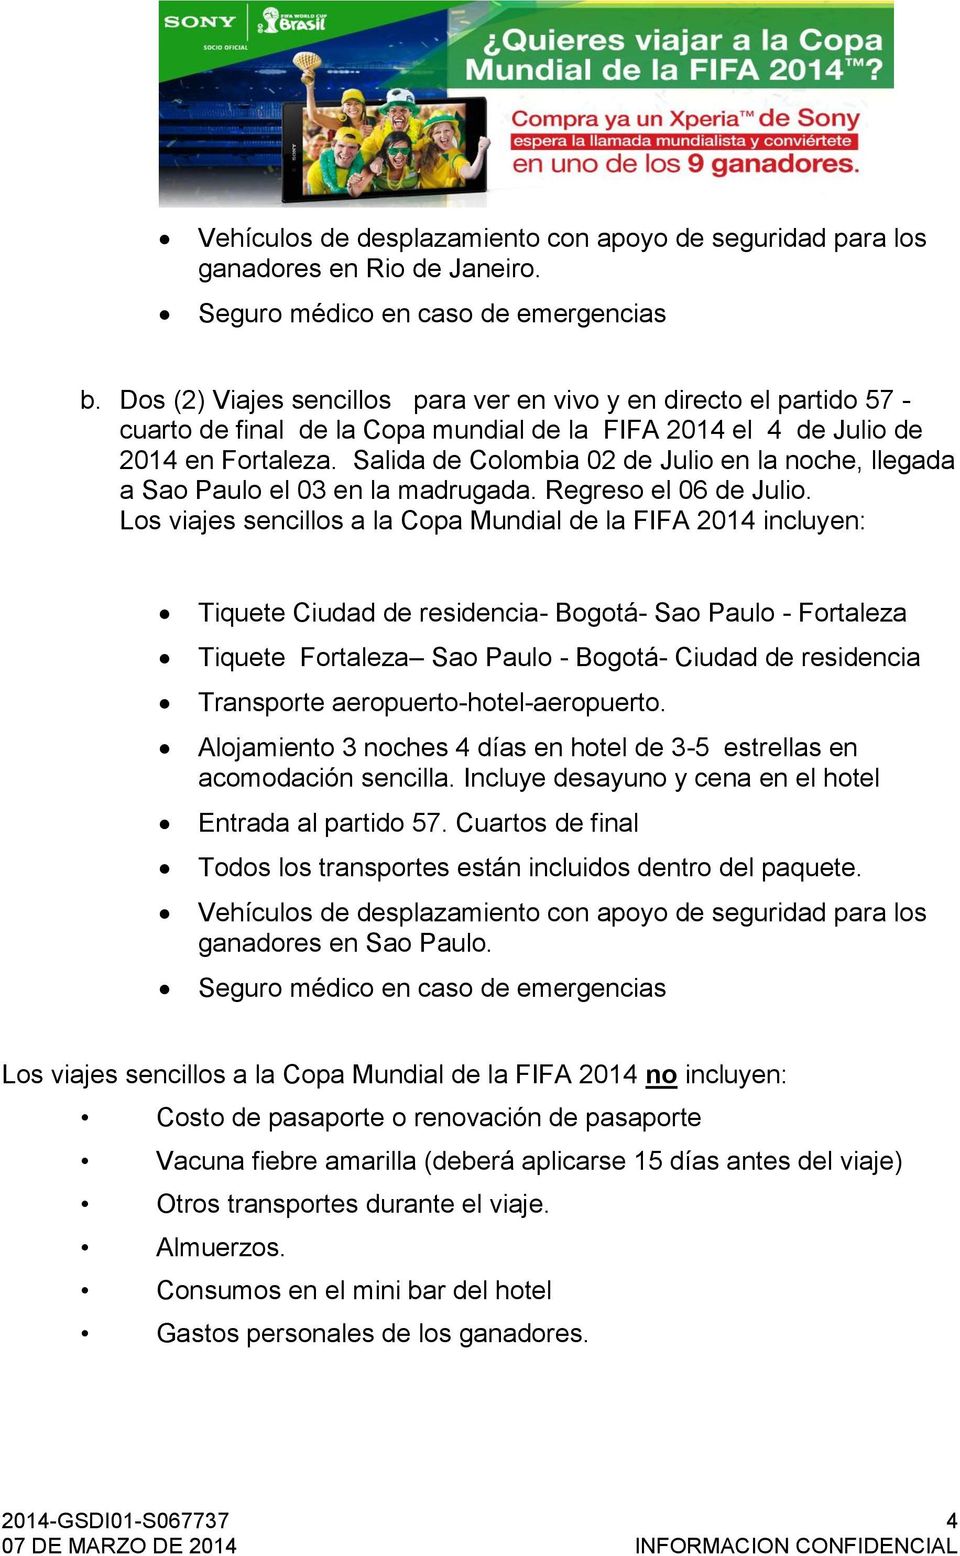 Los viajes sencillos a la Copa Mundial de la FIFA 2014 incluyen: Tiquete Ciudad de residencia- Bogotá- Sao Paulo - Fortaleza Tiquete Fortaleza Sao Paulo - Bogotá- Ciudad de residencia acomodación